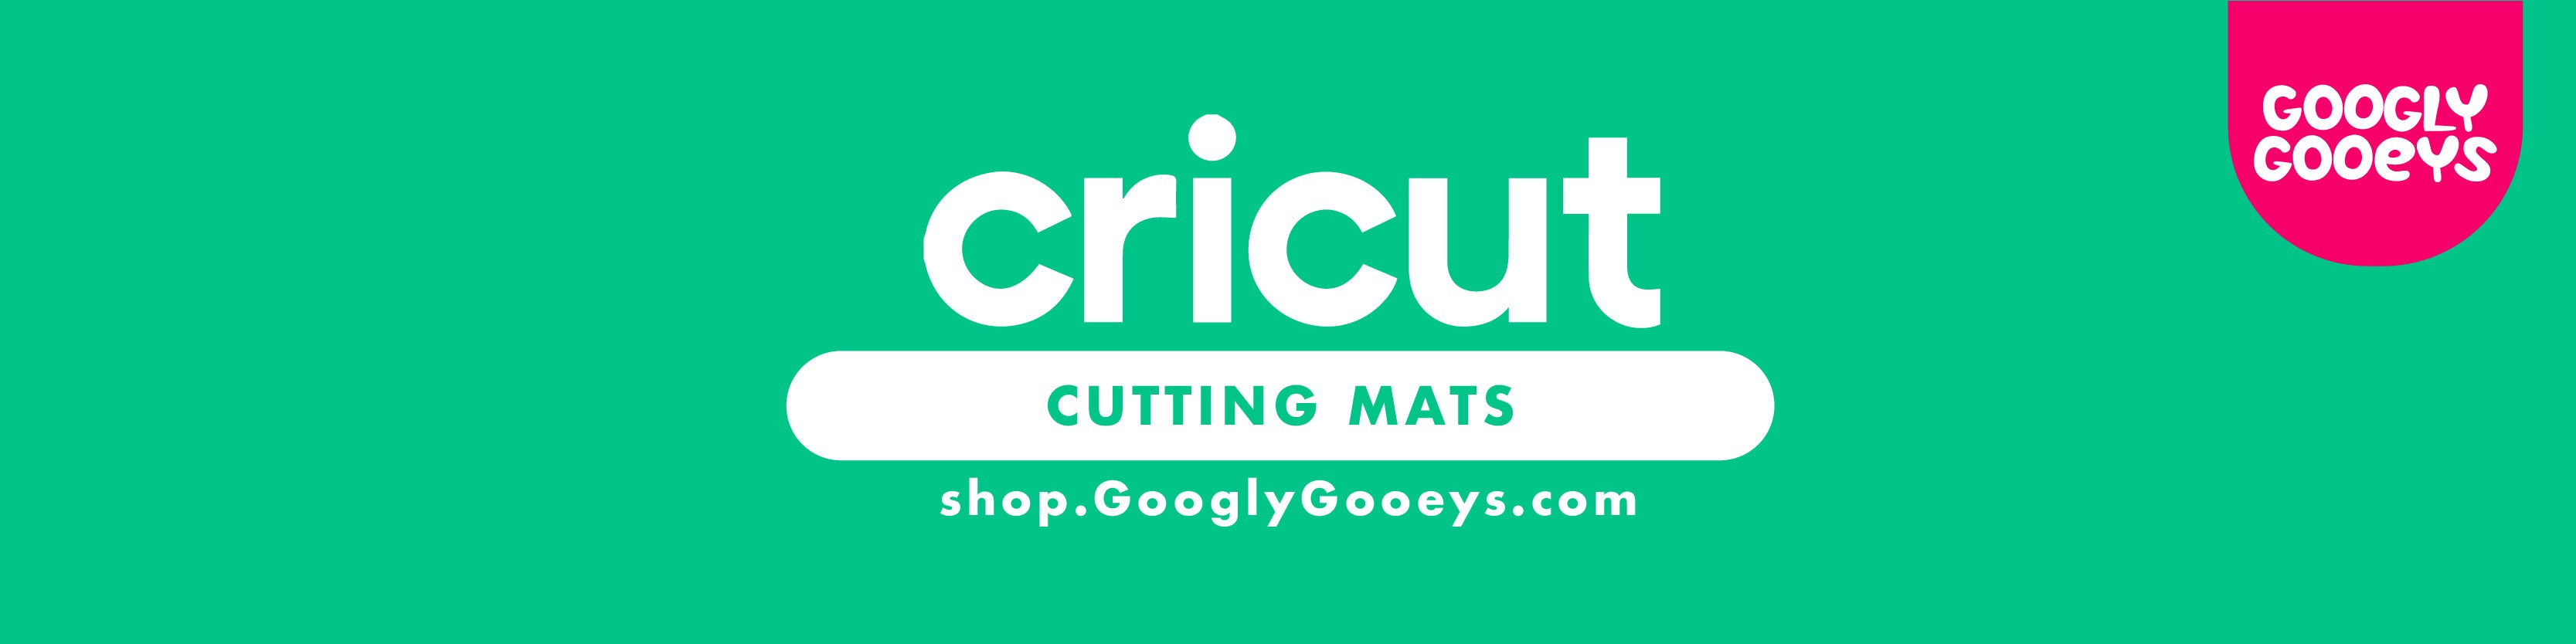 Googly Gooeys Shop - Cricut Cutting Mats